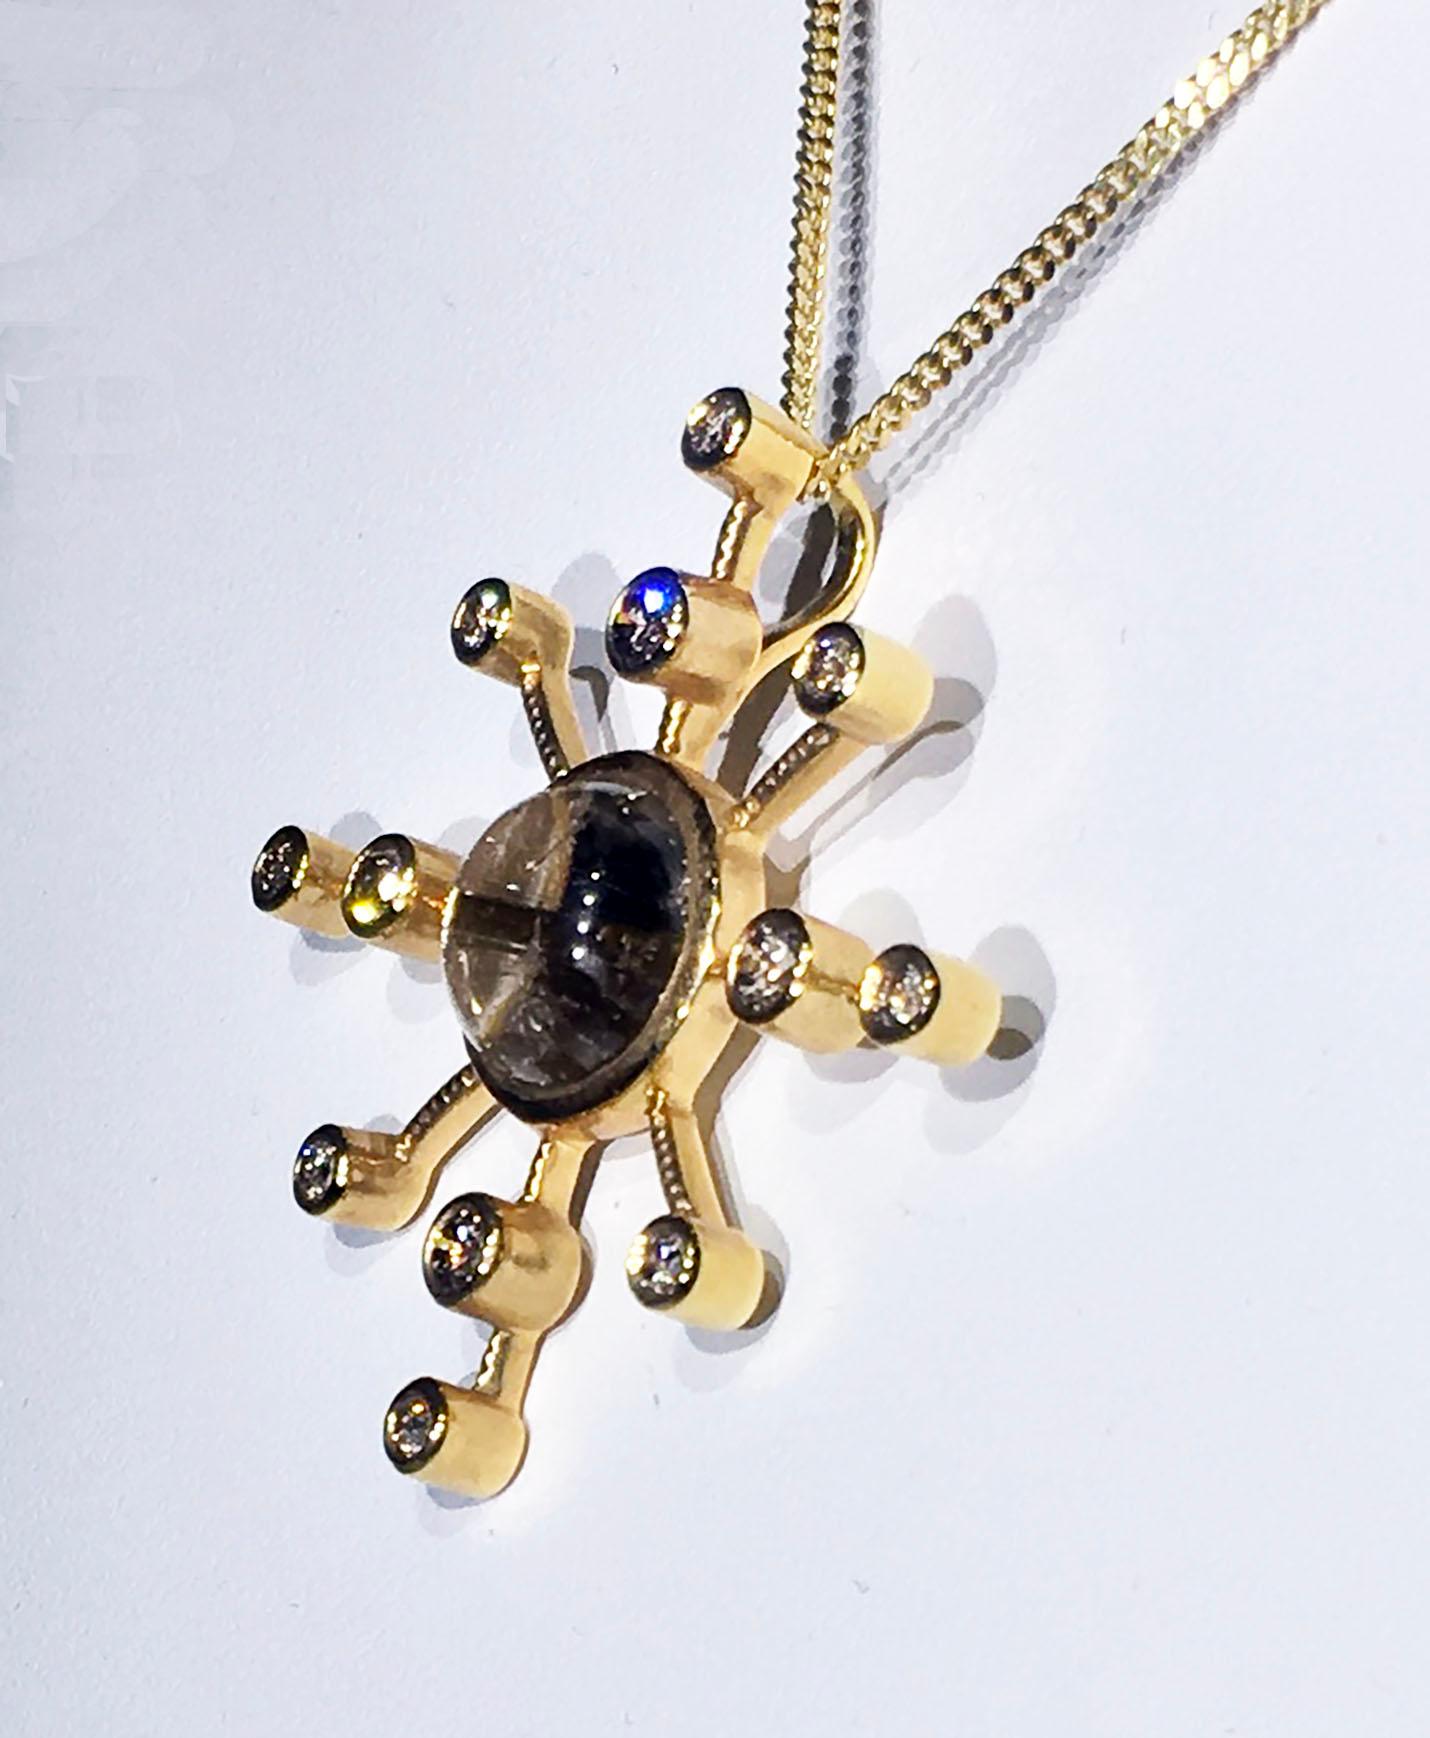 Contemporary Kary Adam Designed, Diamond and Rutile Quartz Gold Pendant